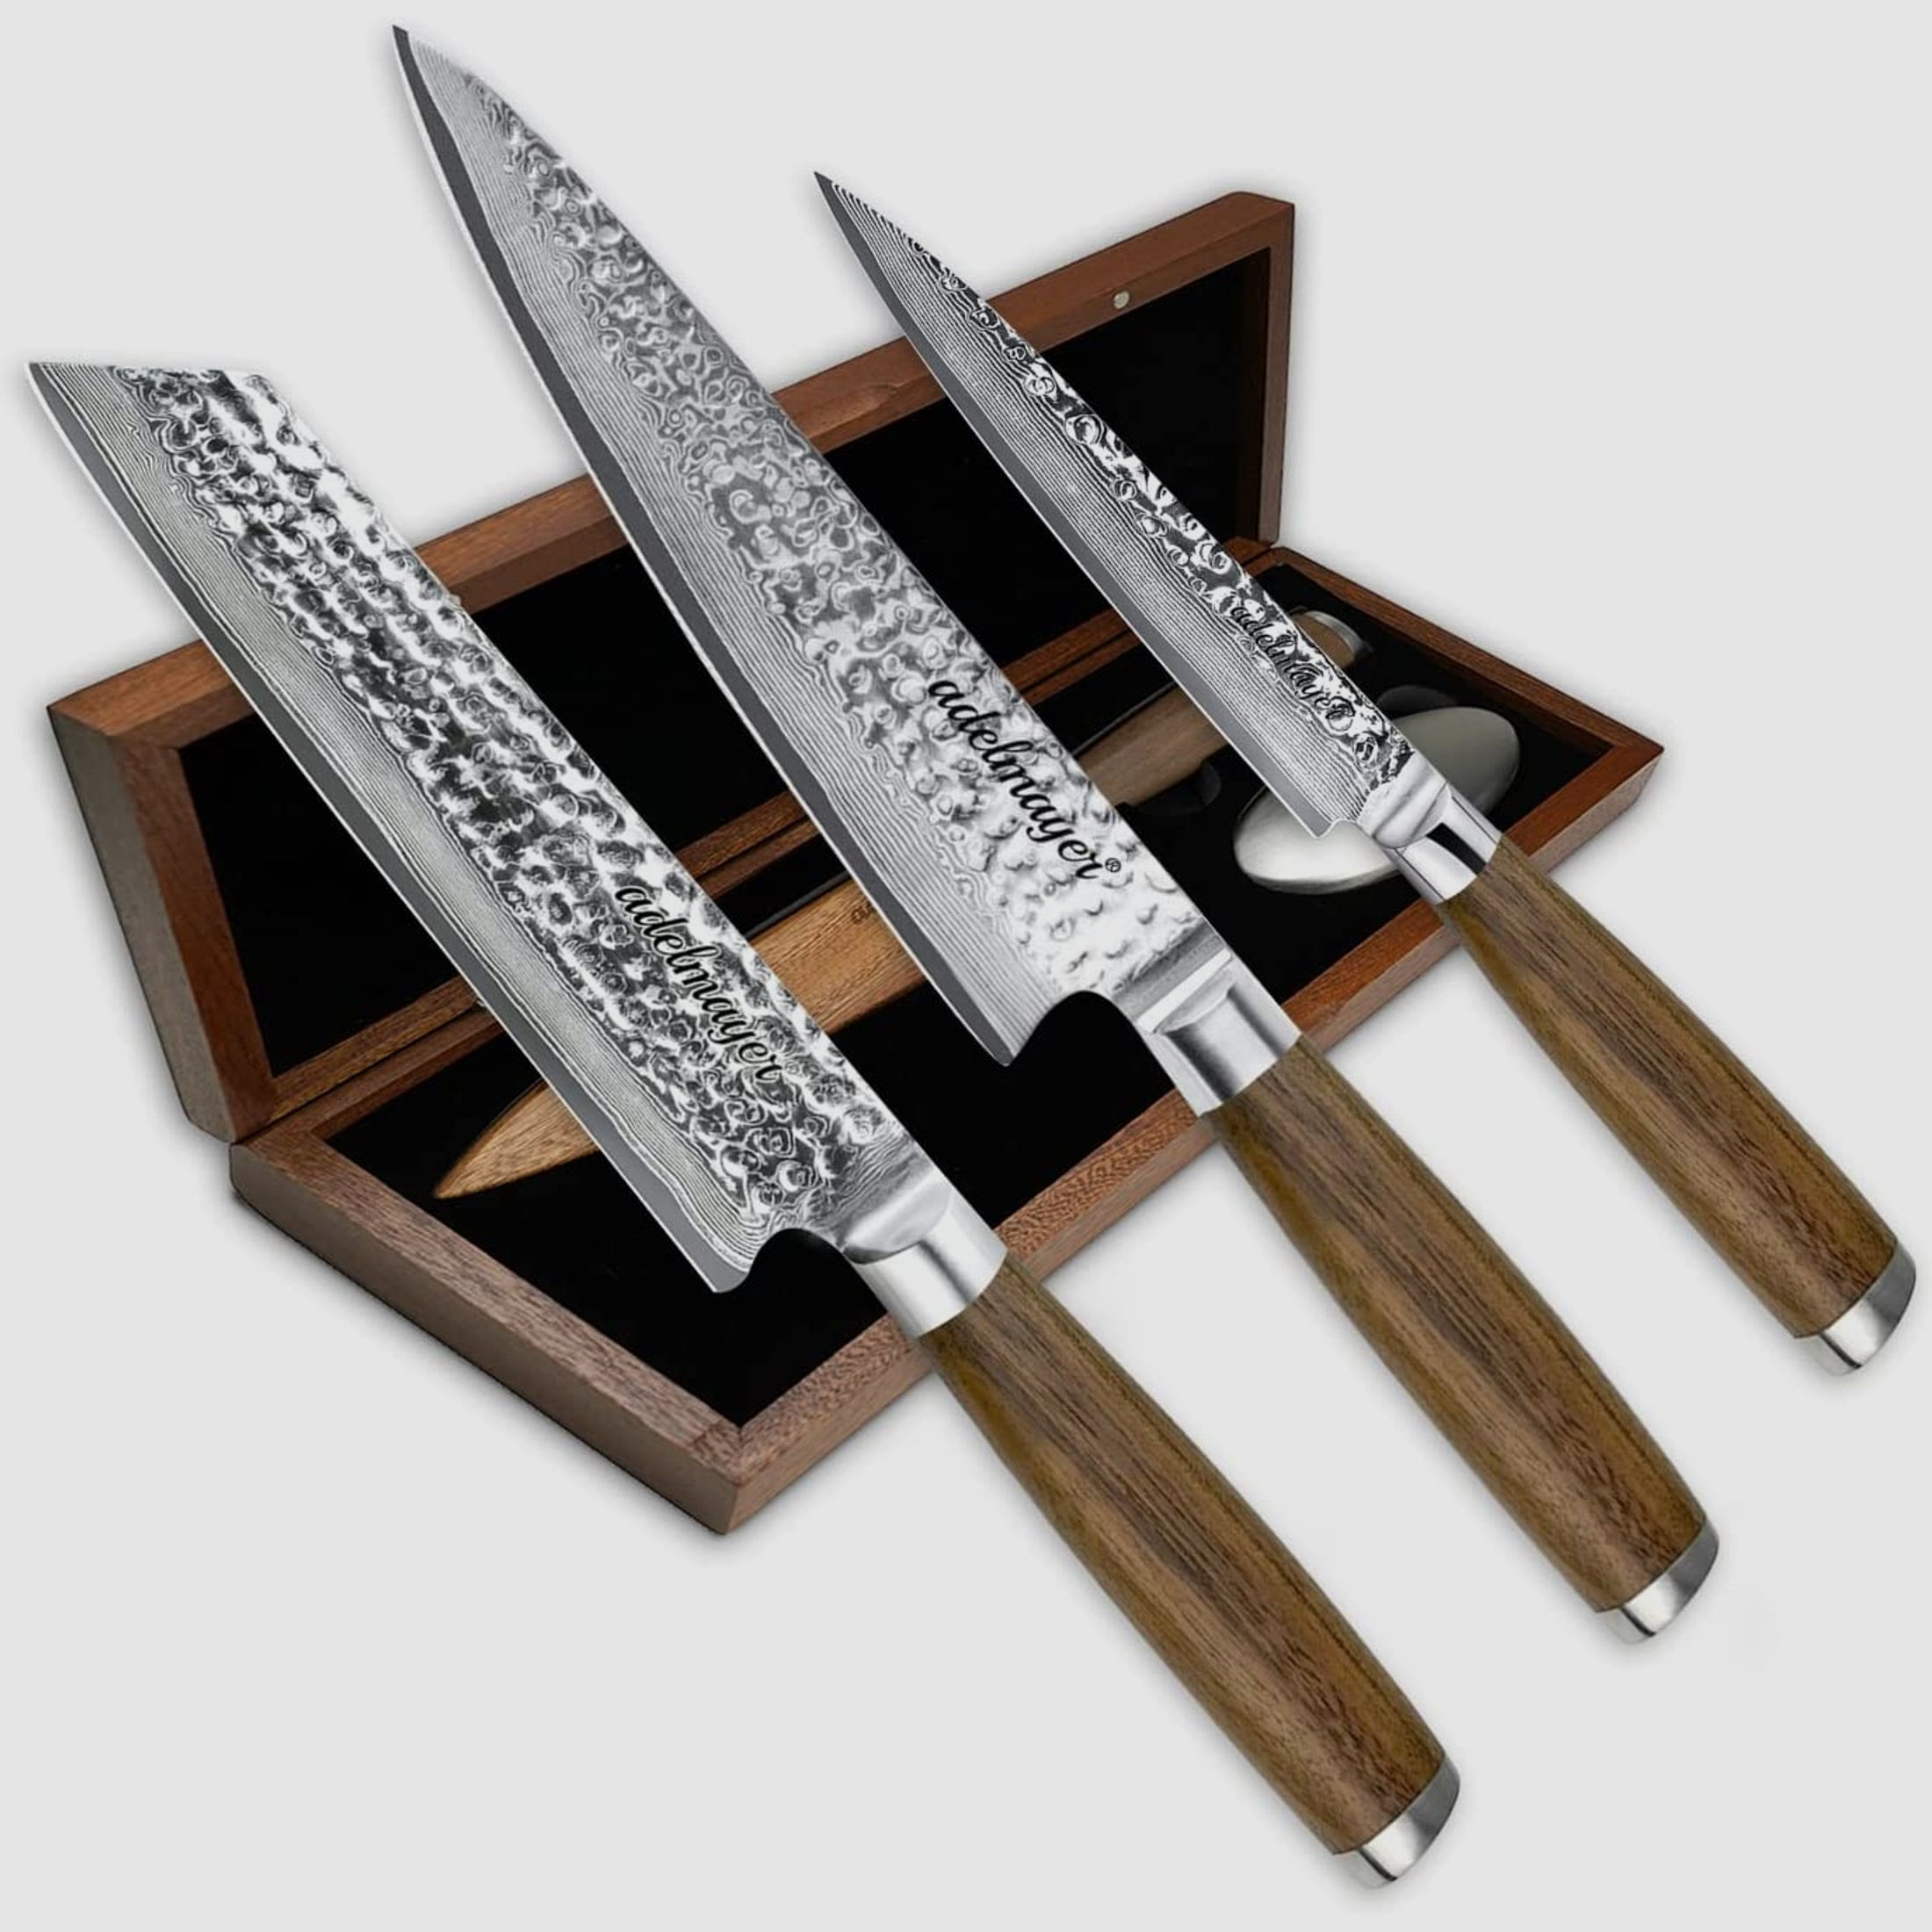 adelmayer® Damastmesser Set OSAKA - 3-teiliges Messerset aus japanischem Damast-Stahl: Kiritsuke Messer, Küchenmesser, Allzweckmesser